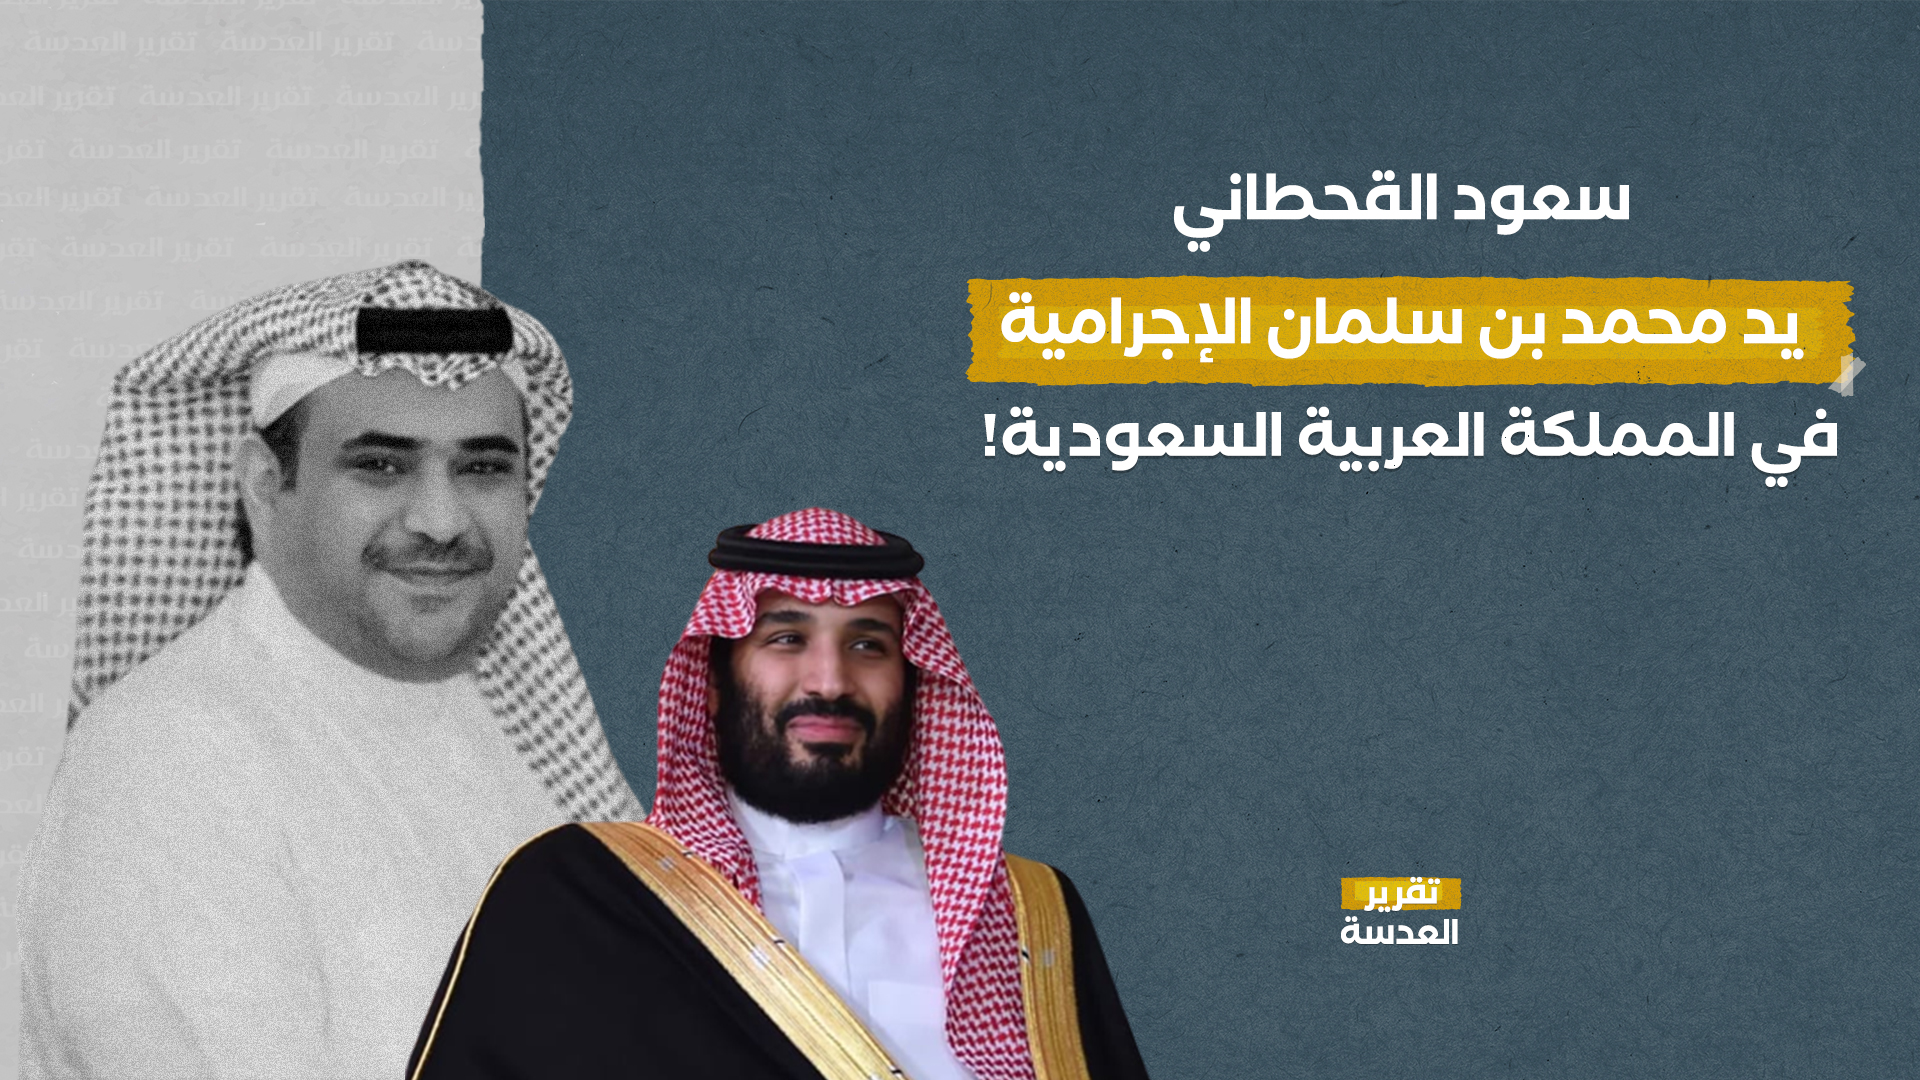 سعود القحطاني يد محمد بن سلمان الإجرامية في المملكة العربية السعودية!